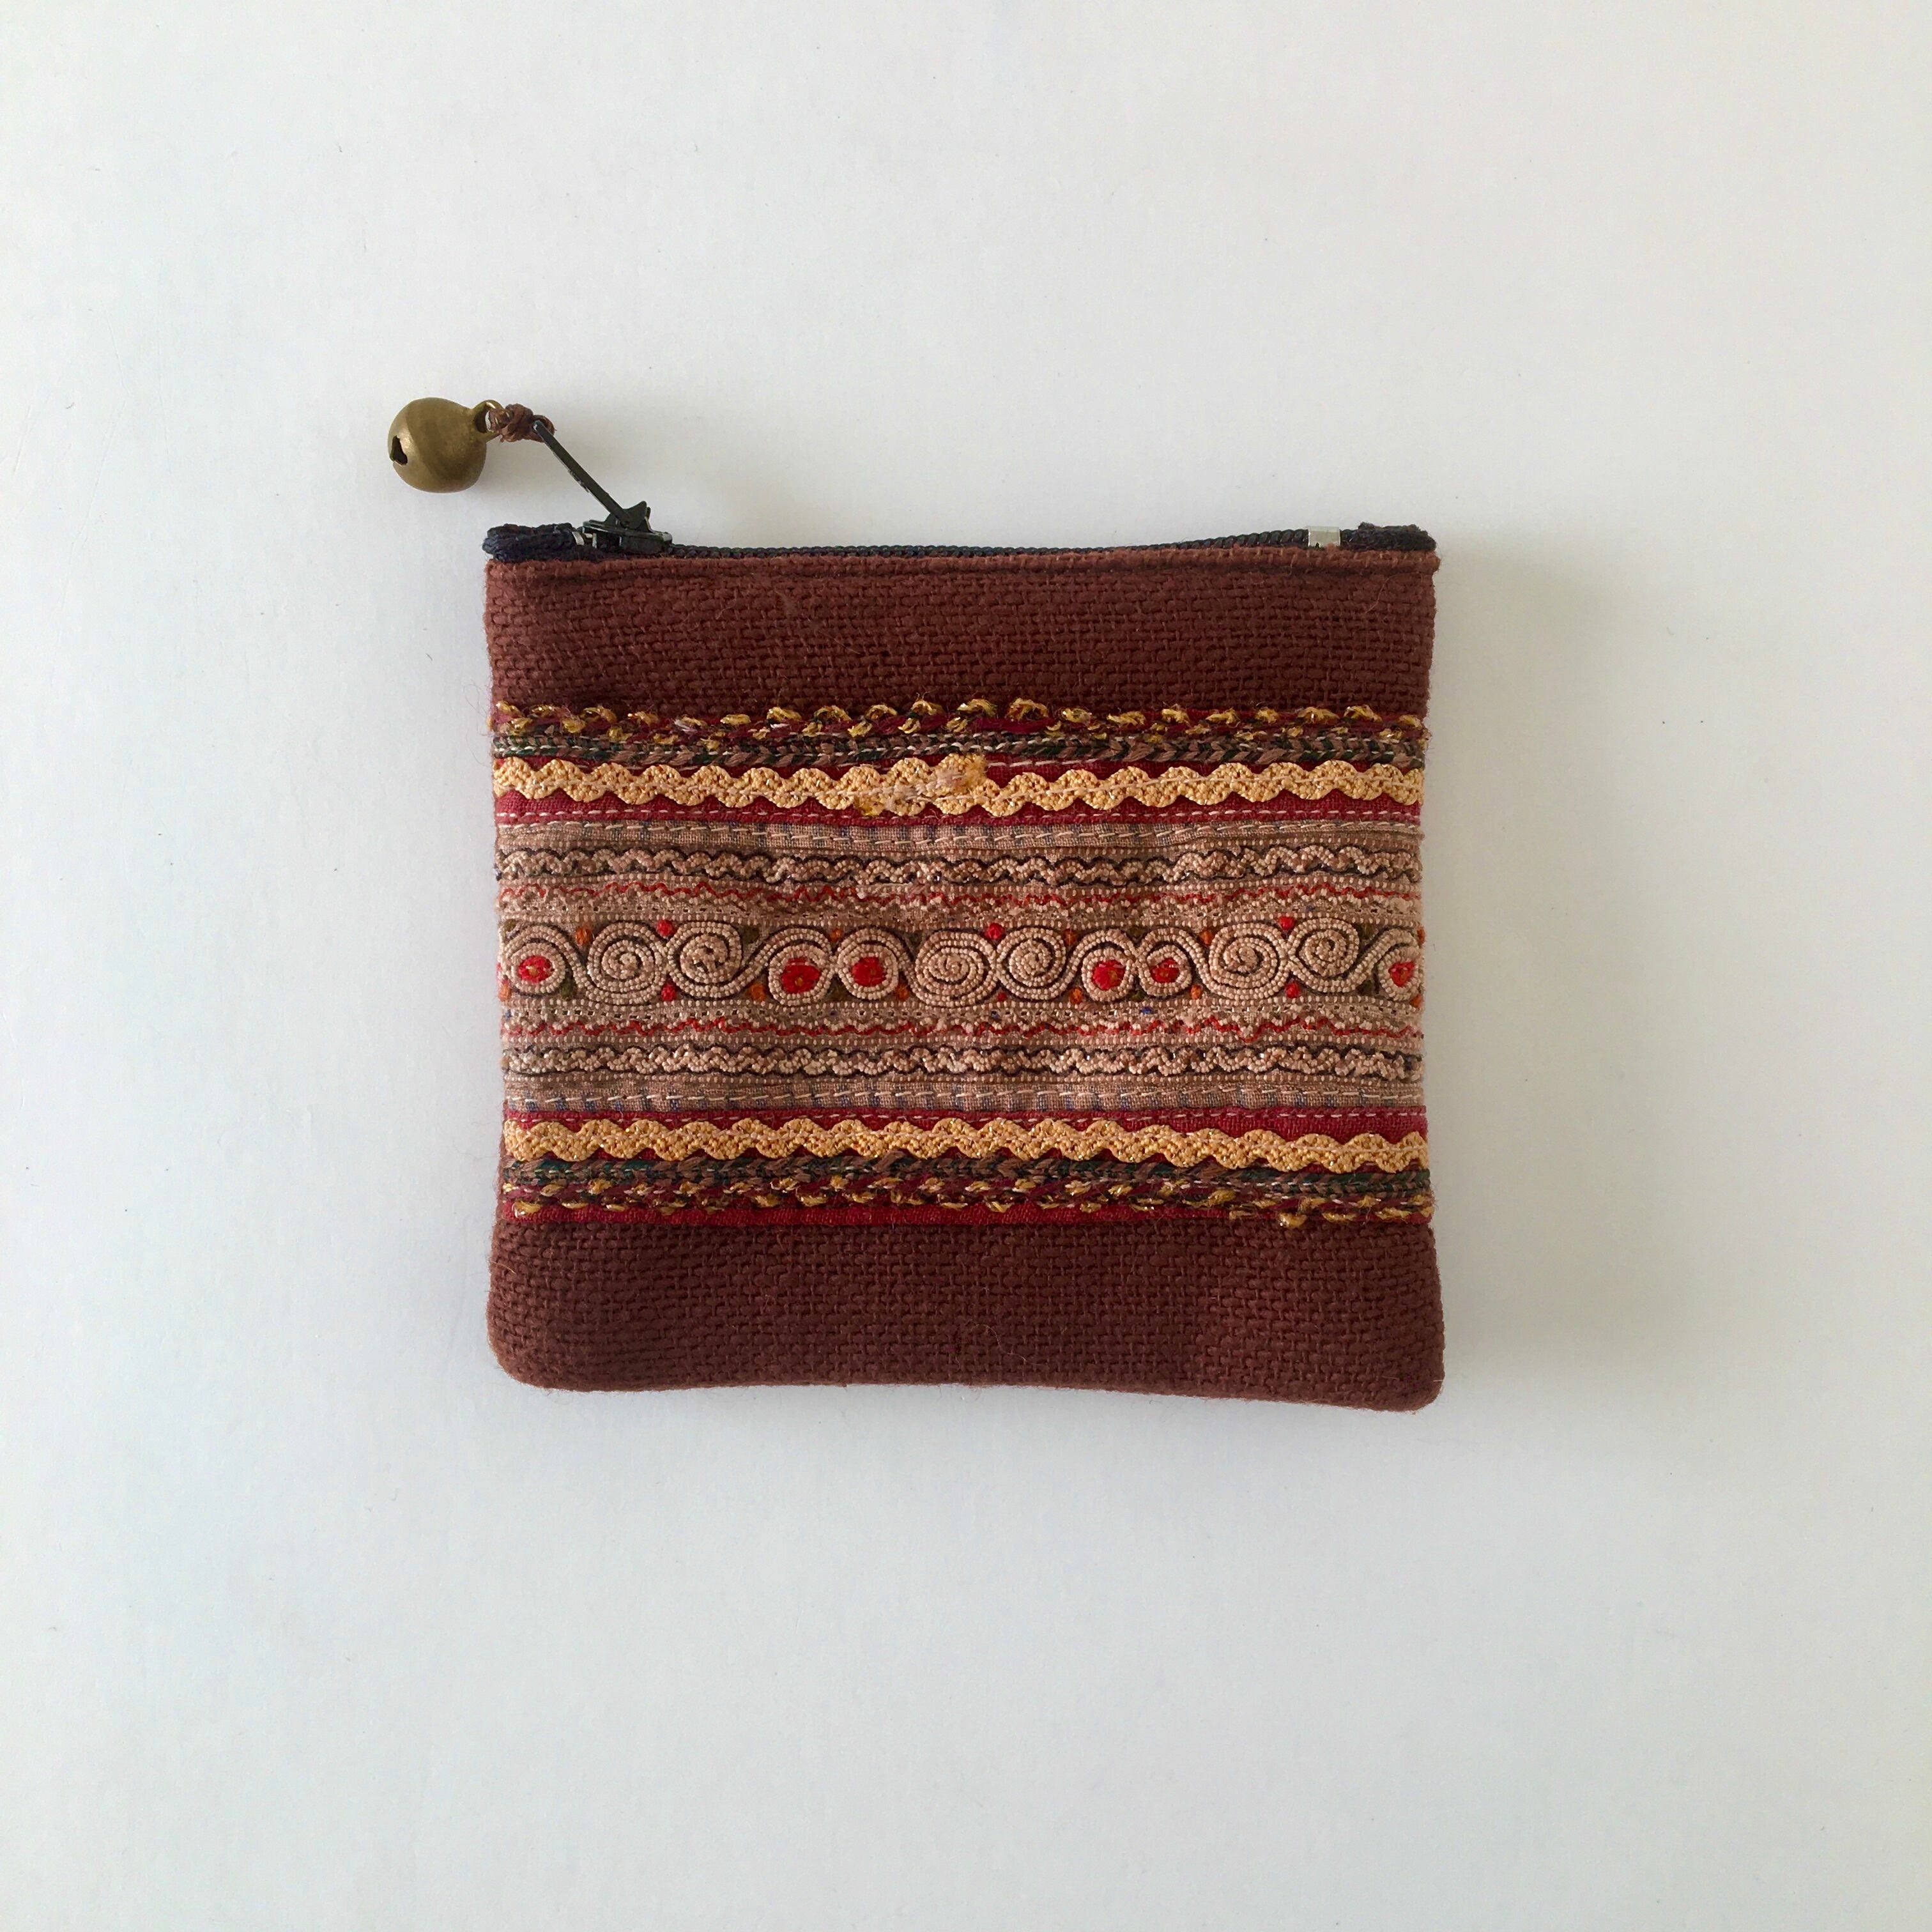 モン族の刺繍のコインケース③｜Hmong Embroidery Coin Purse